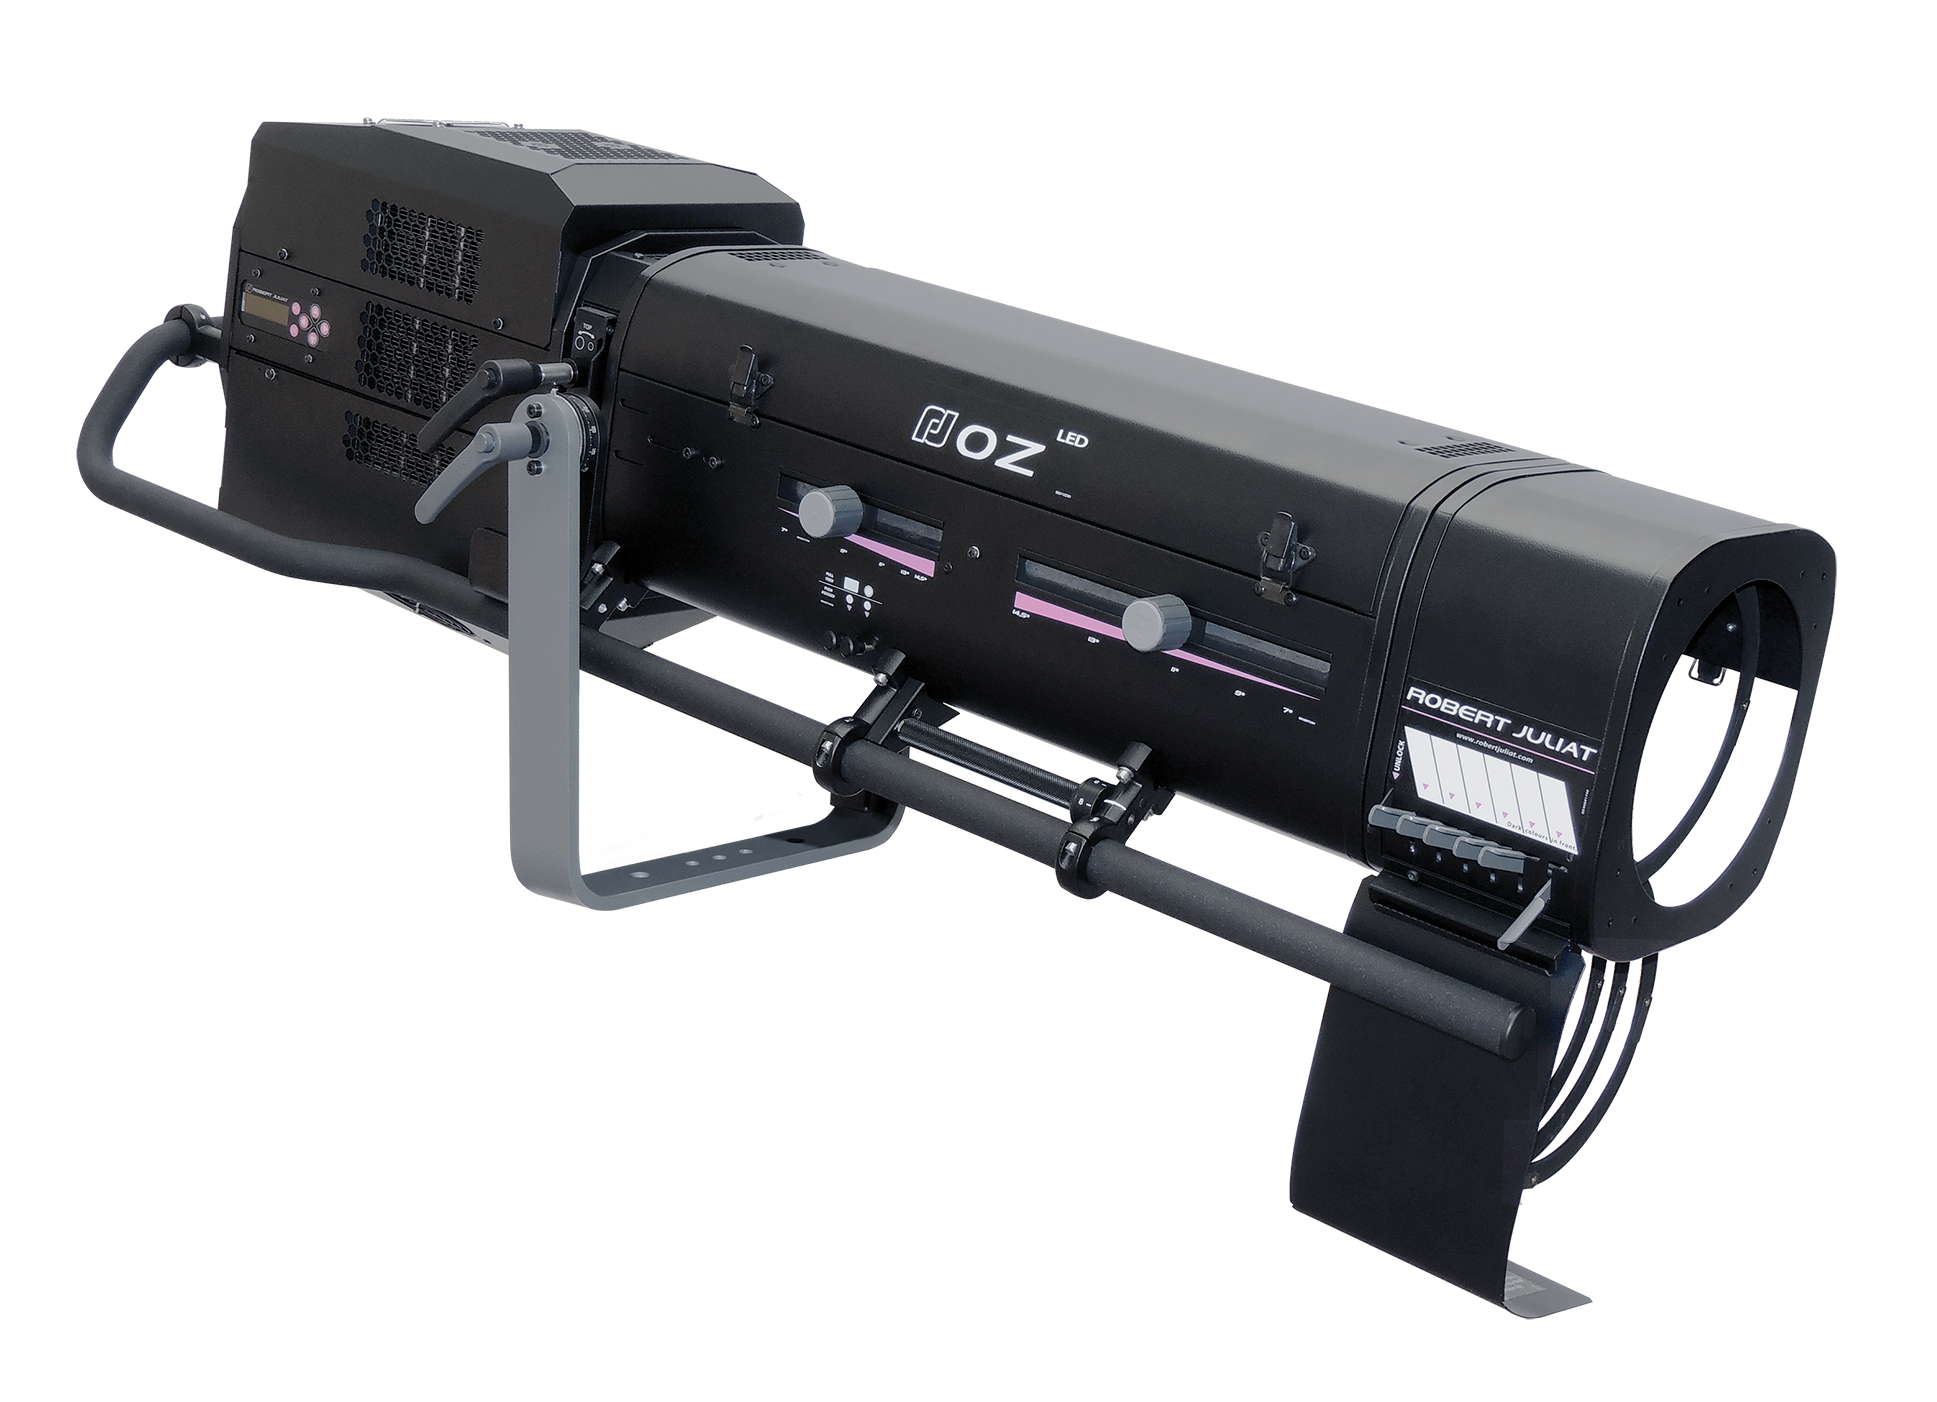 #Oz1469 OZ 600W LED - Compact Range Followspot